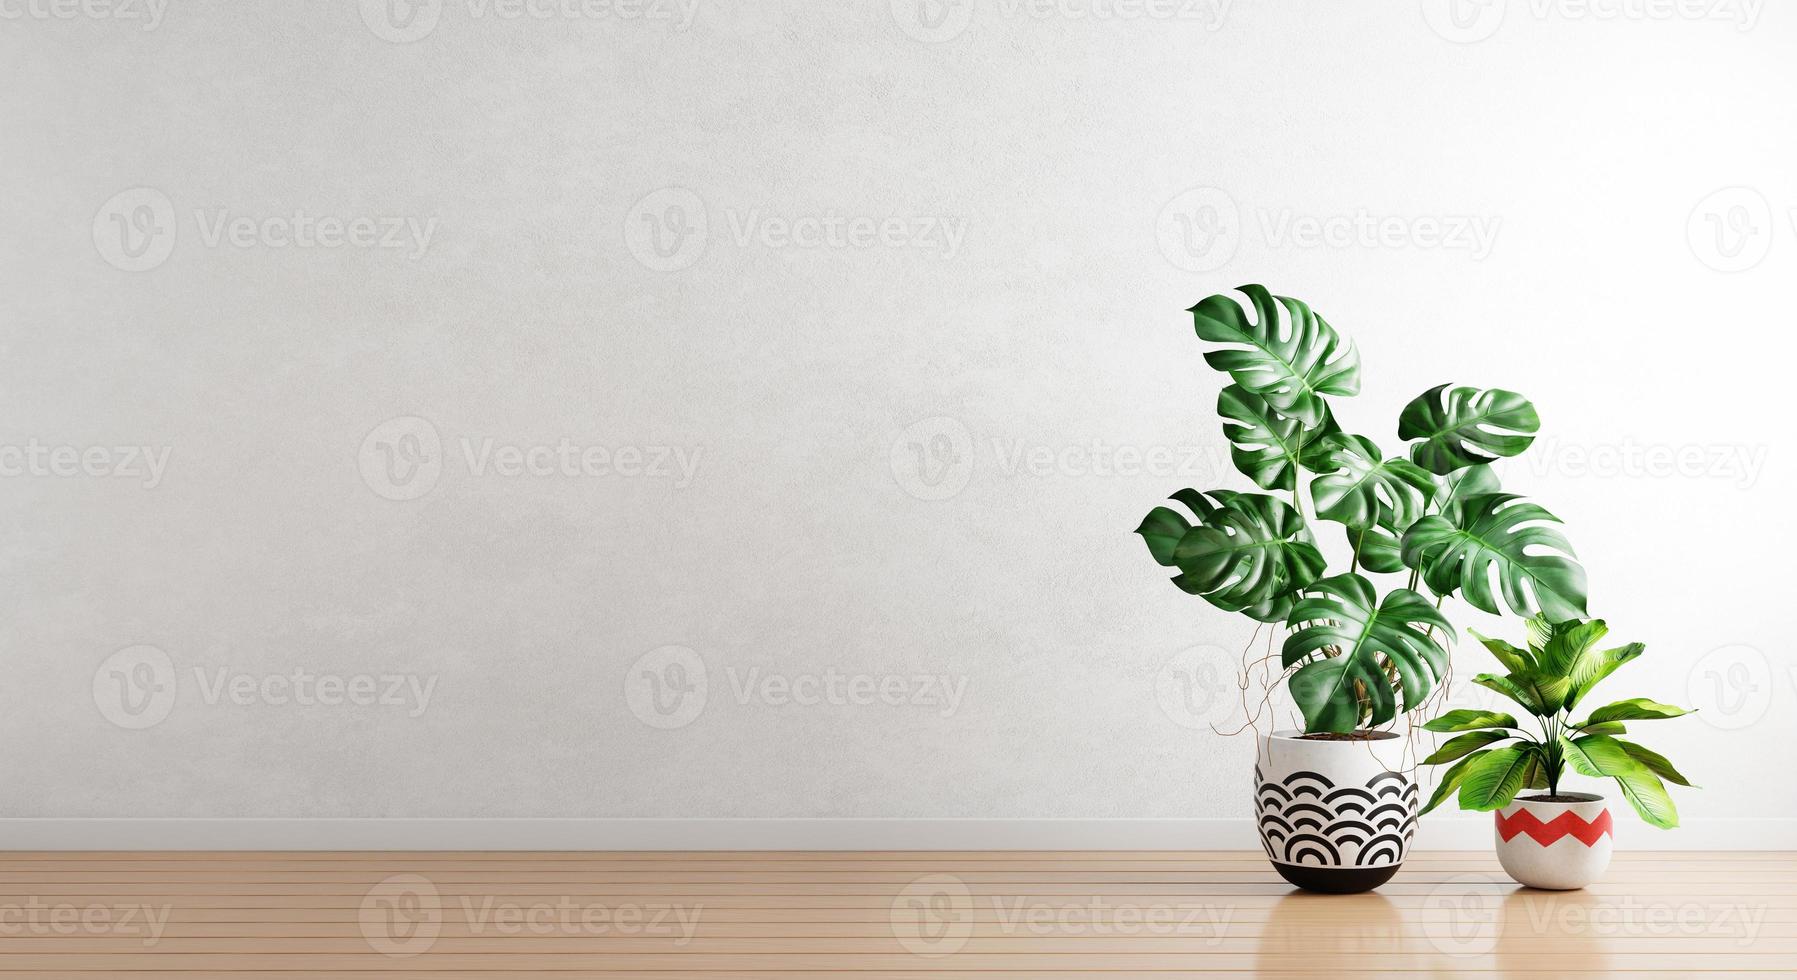 piante verdi in vaso di piante d'appartamento con sfondo bianco muro vuoto. architettura d'interni e concetto naturale. rendering di illustrazioni 3d foto